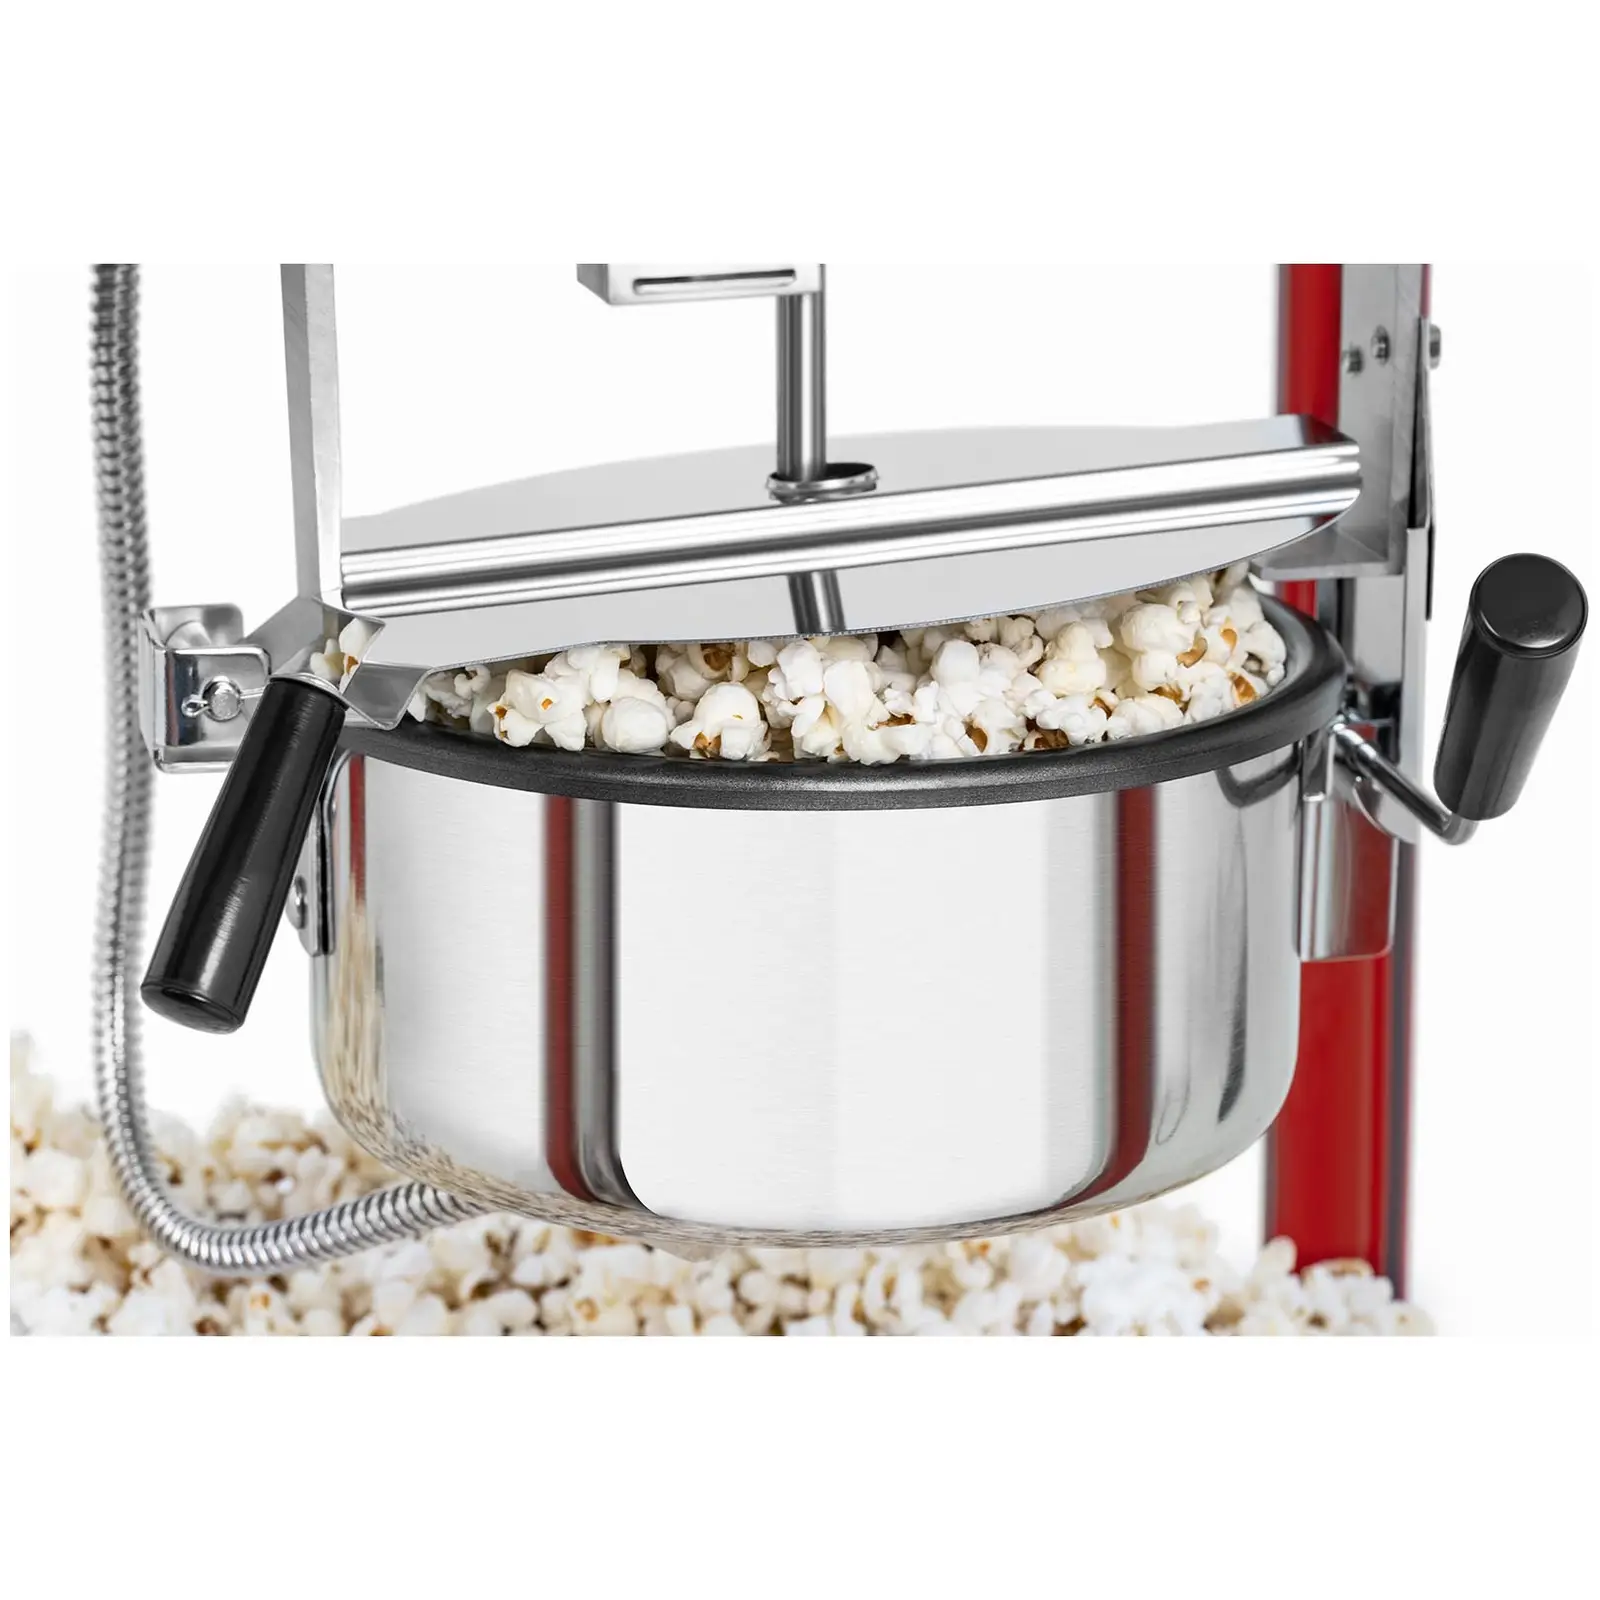 Stroj na popcorn - červená stříška